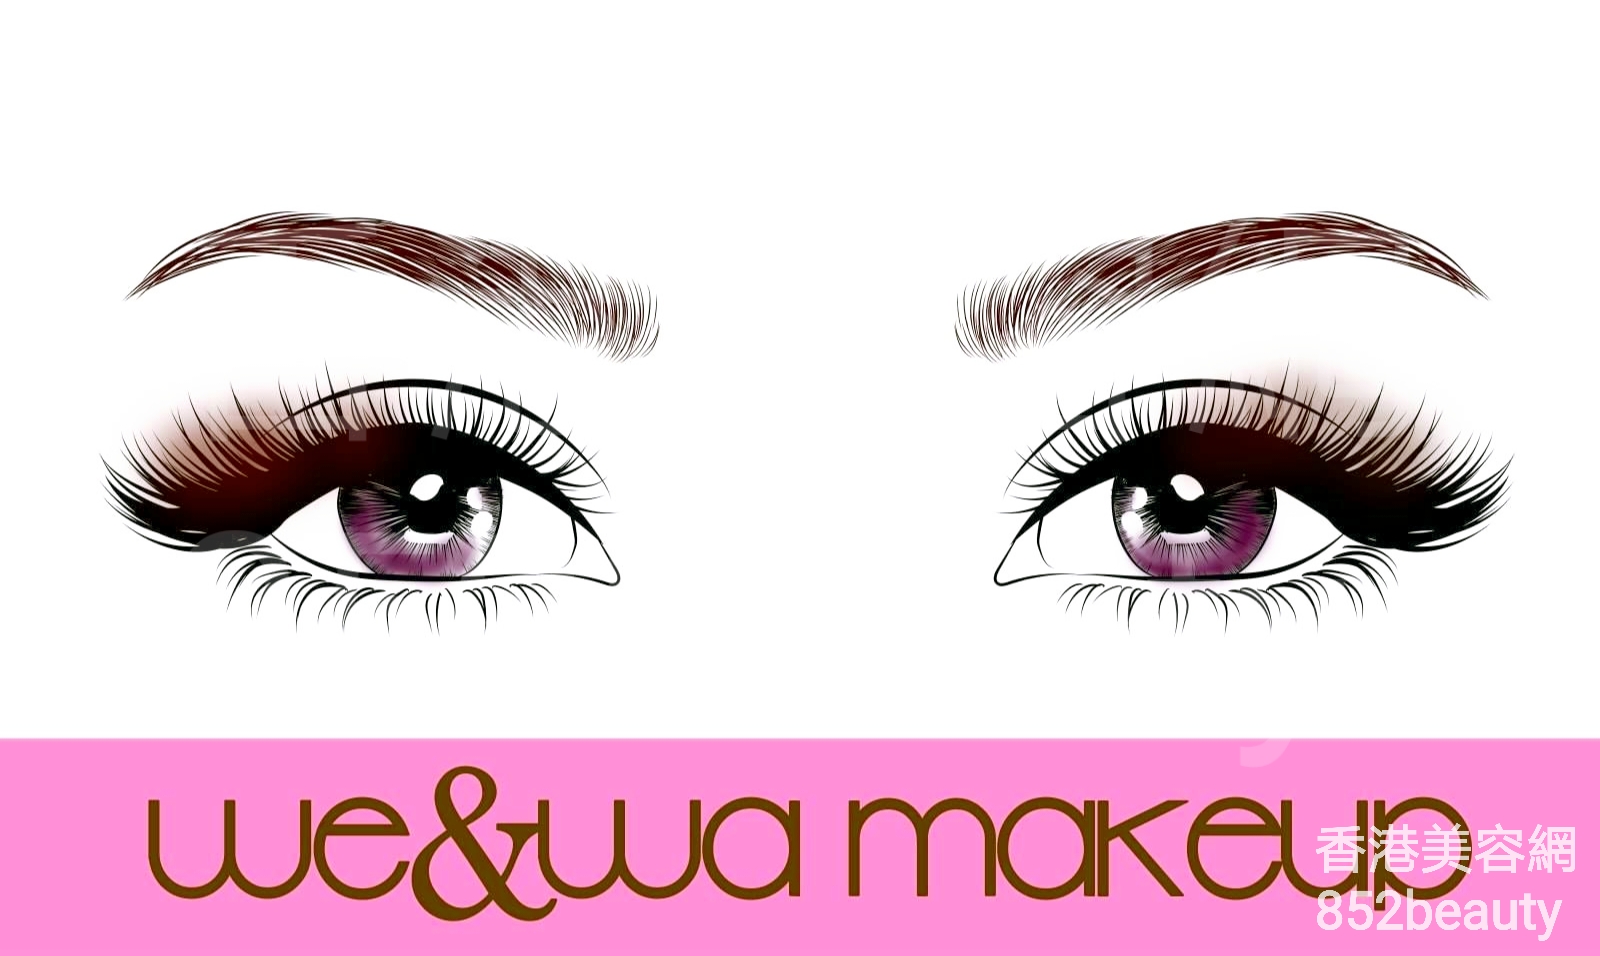 美容院: we & wa makeup